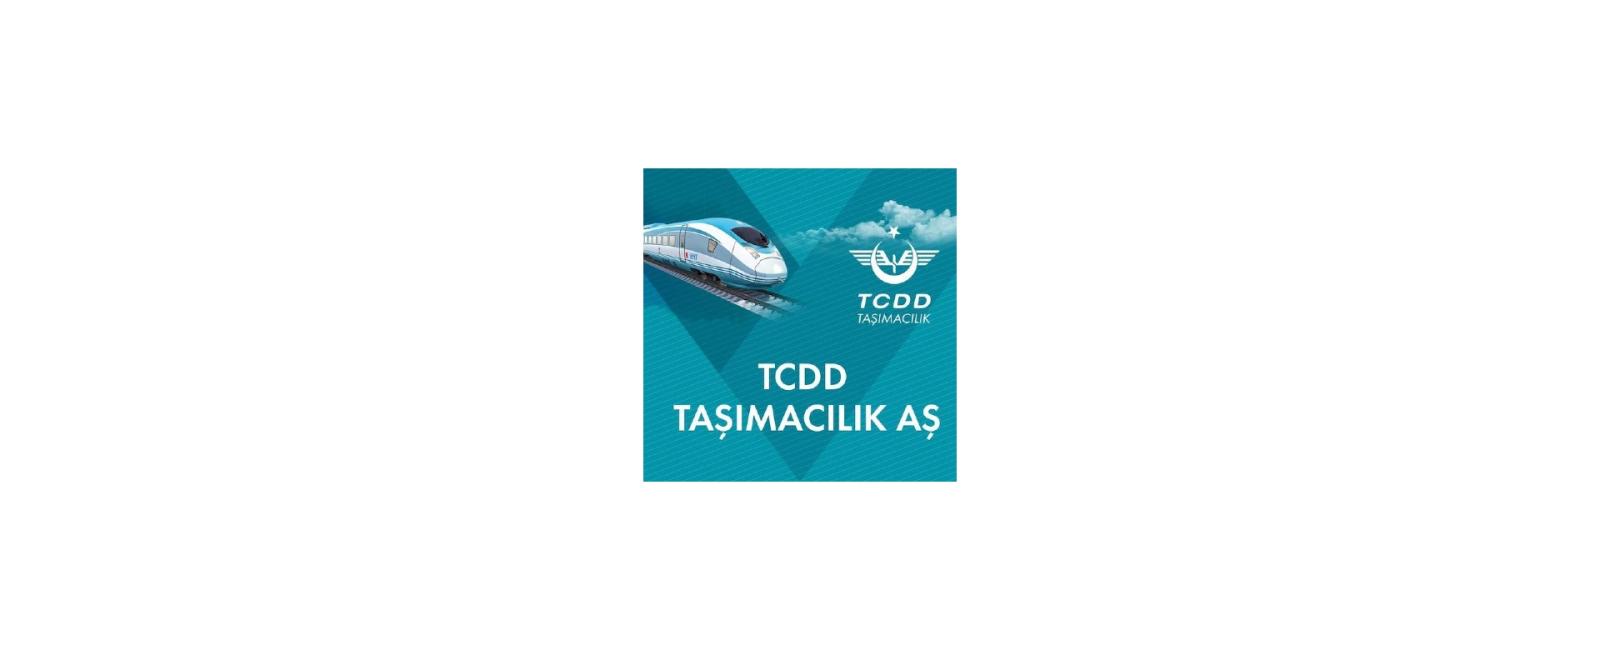 تطبيق حجز تذاكر القطارات TCDD Taşımacılık